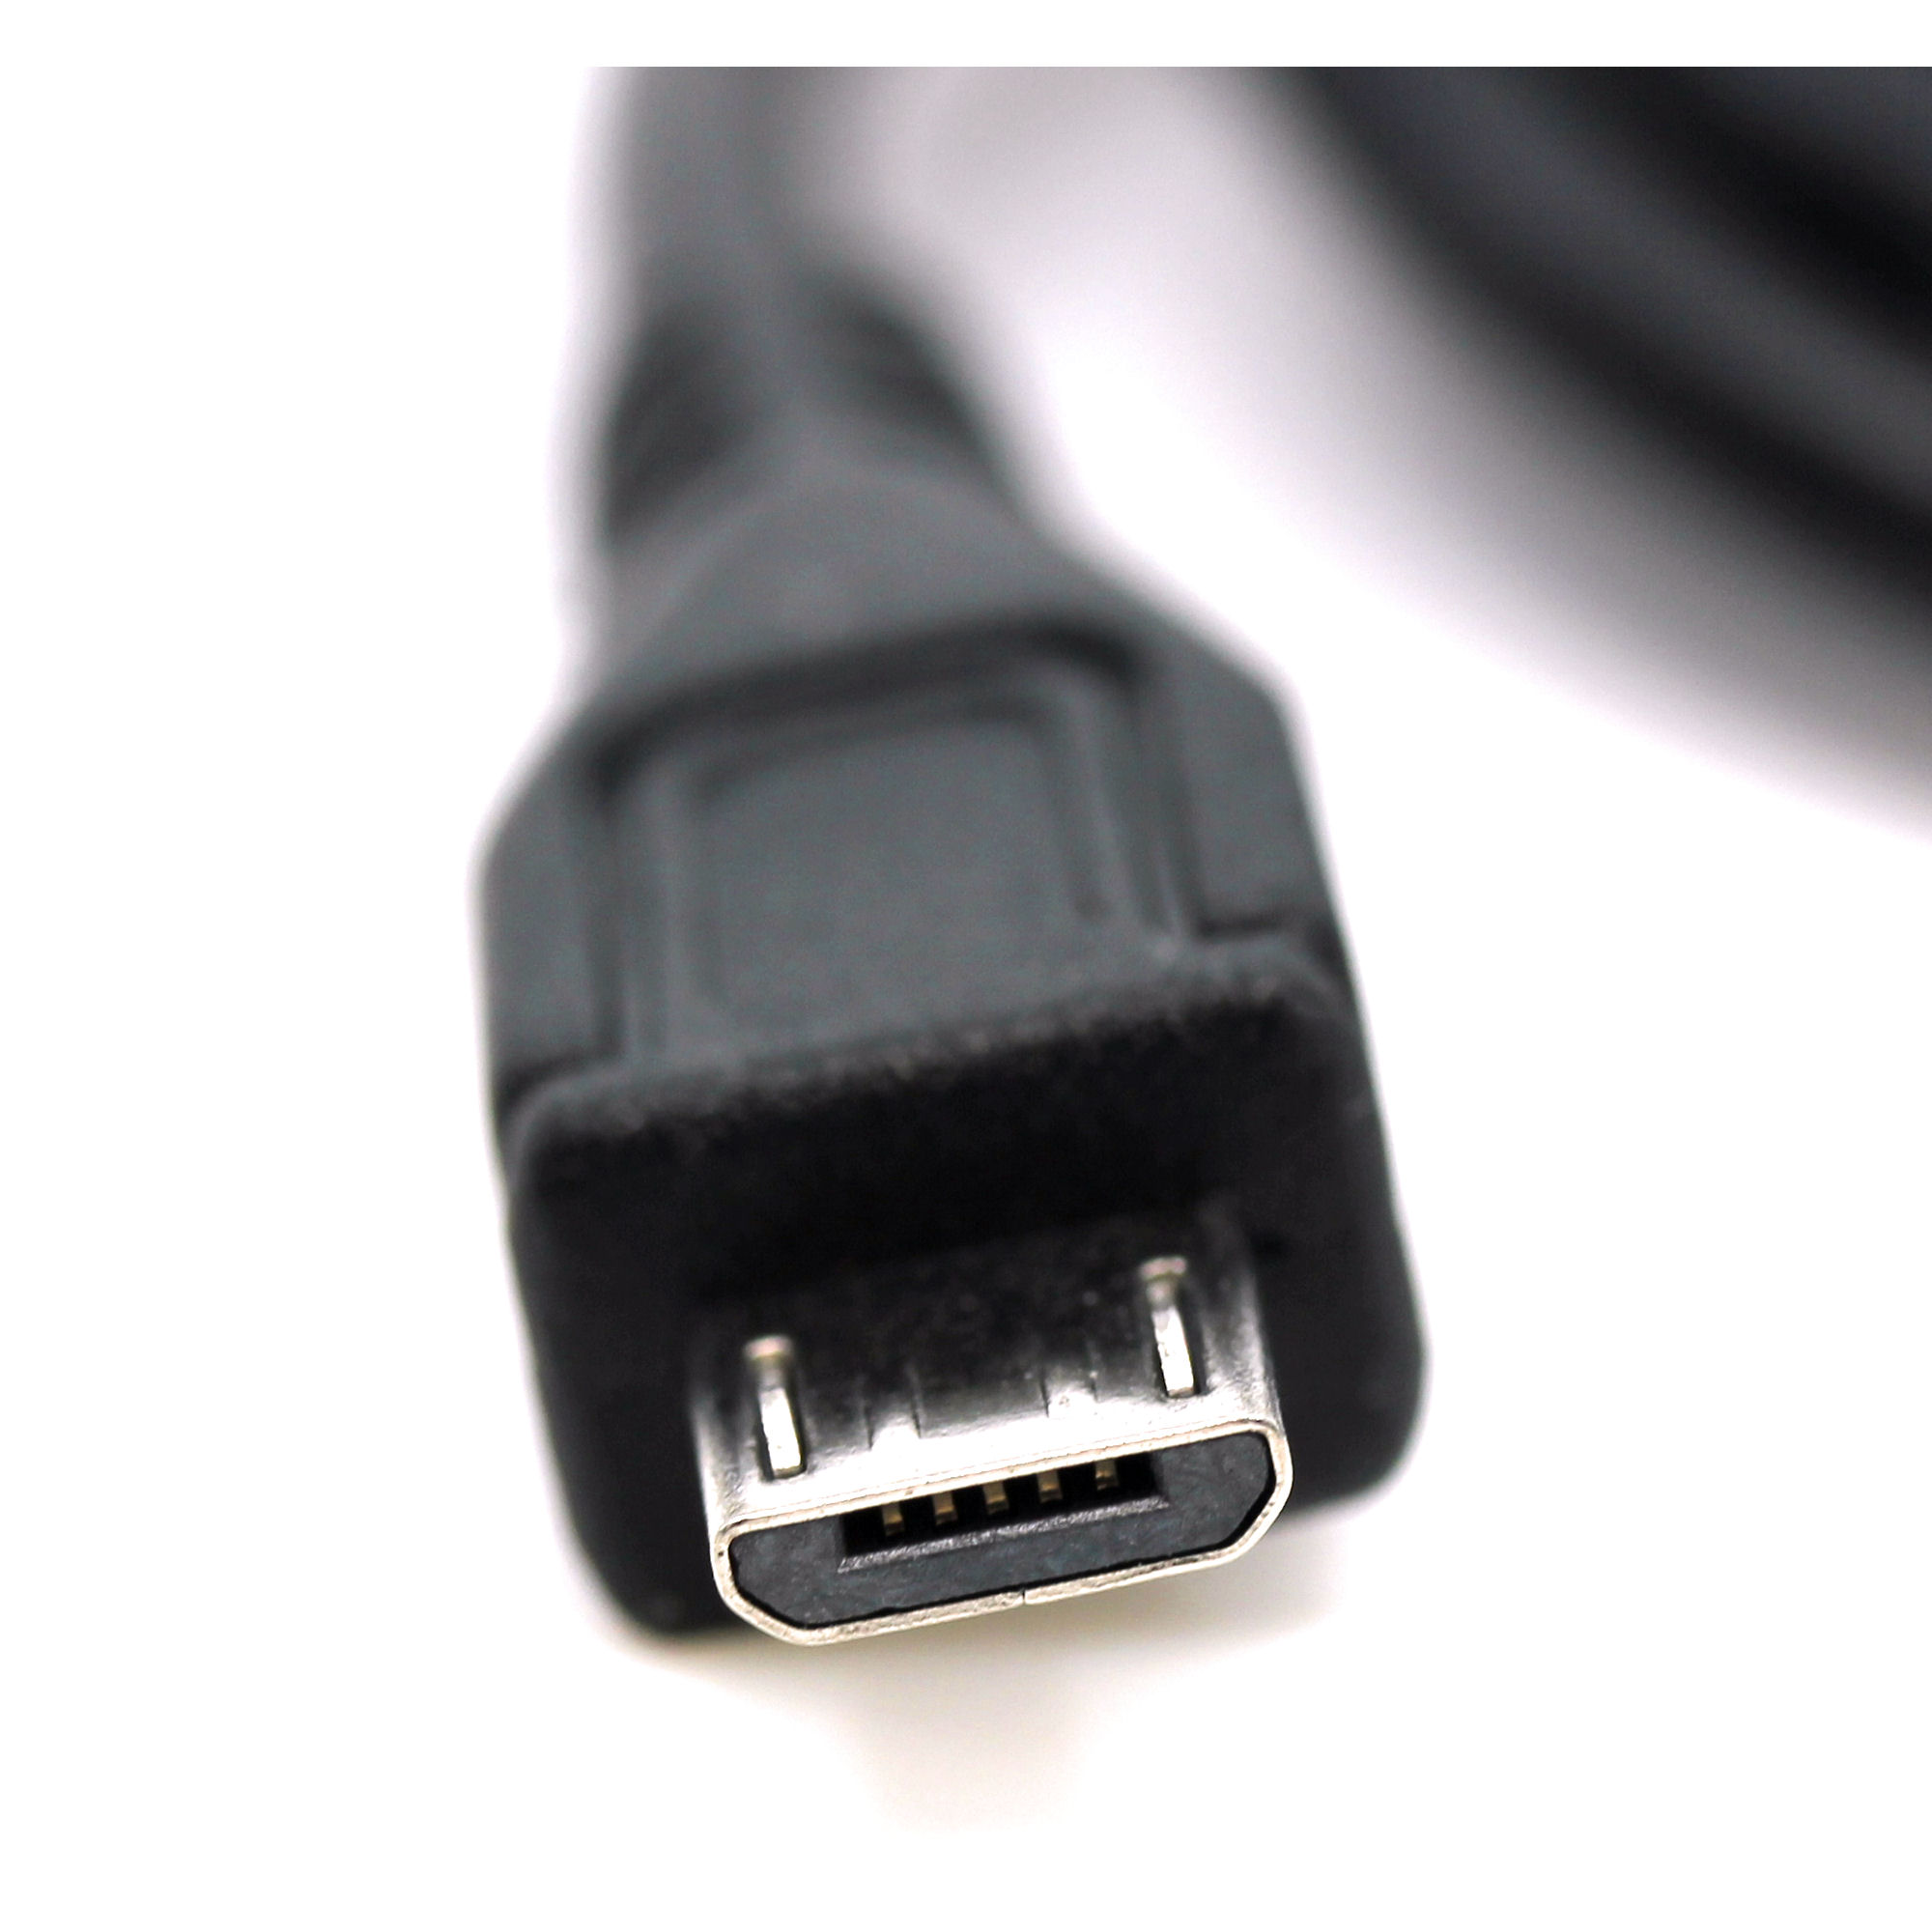 USB Ladekabel für JBL Charge, Charge 2, Flip, Flip 2, Flip 3, Go, Pulse 2, Reflect, Soundbox